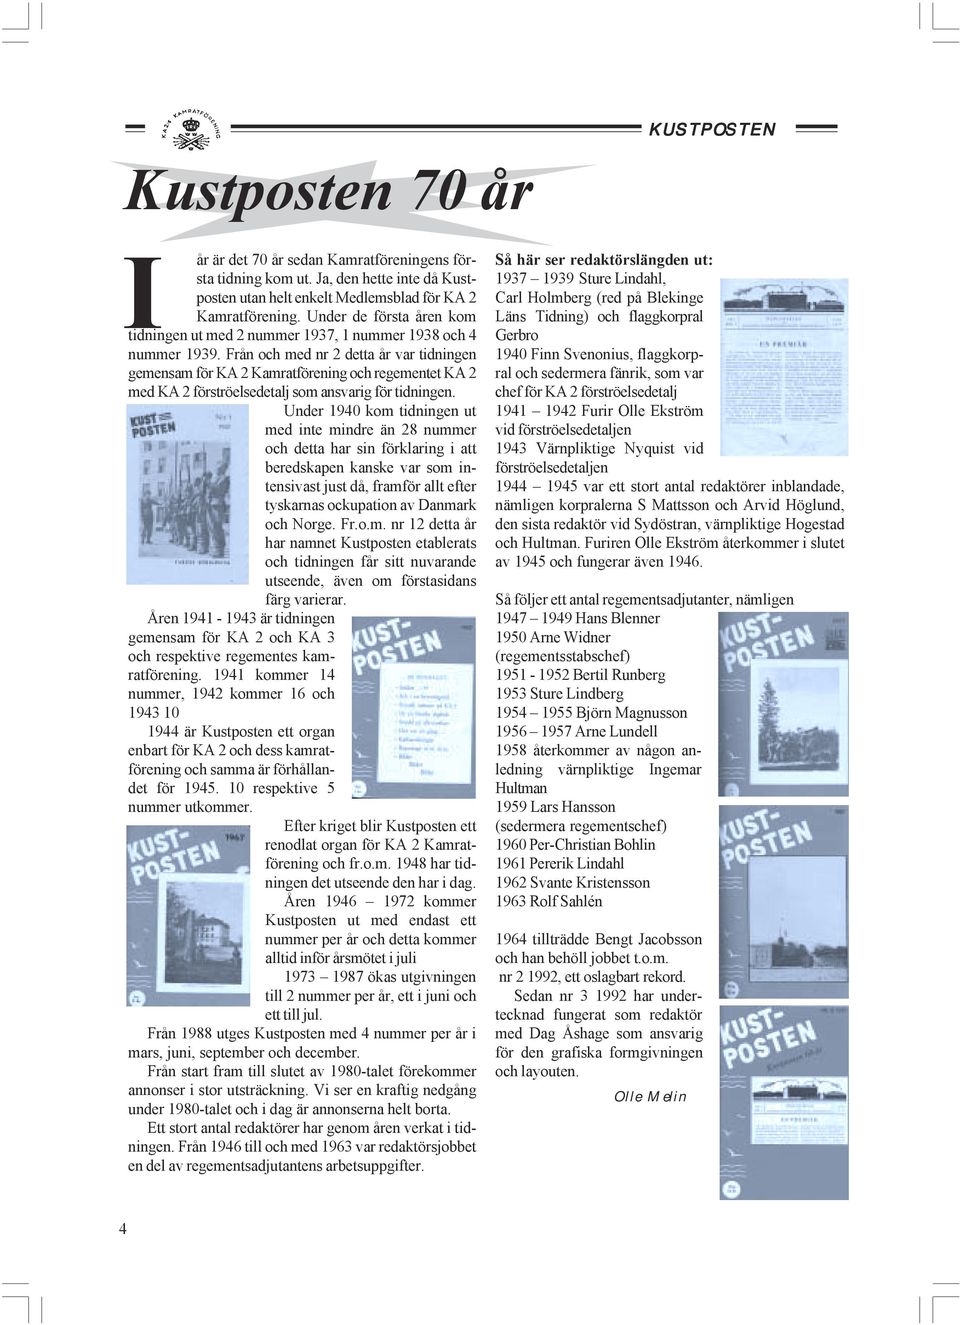 Från och med nr 2 detta år var tidningen gemensam för KA 2 Kamratförening och regementet KA 2 med KA 2 förströelsedetalj som ansvarig för tidningen.